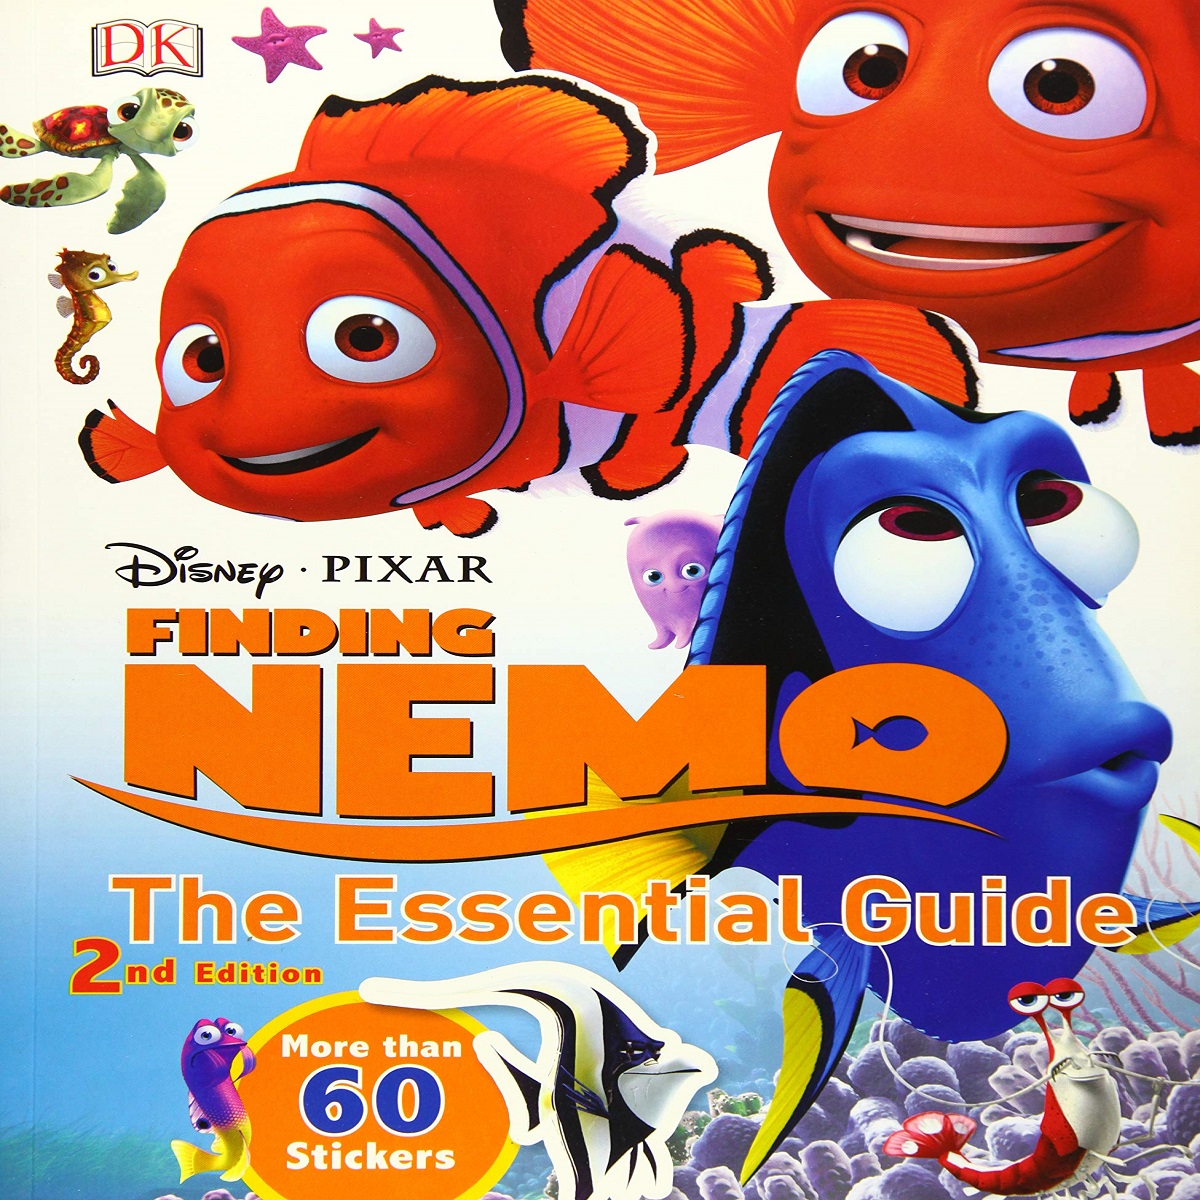 مجله Disney Pixar Finding Nemo: The Essential Guide, 2nd Edition مارچ 2016 